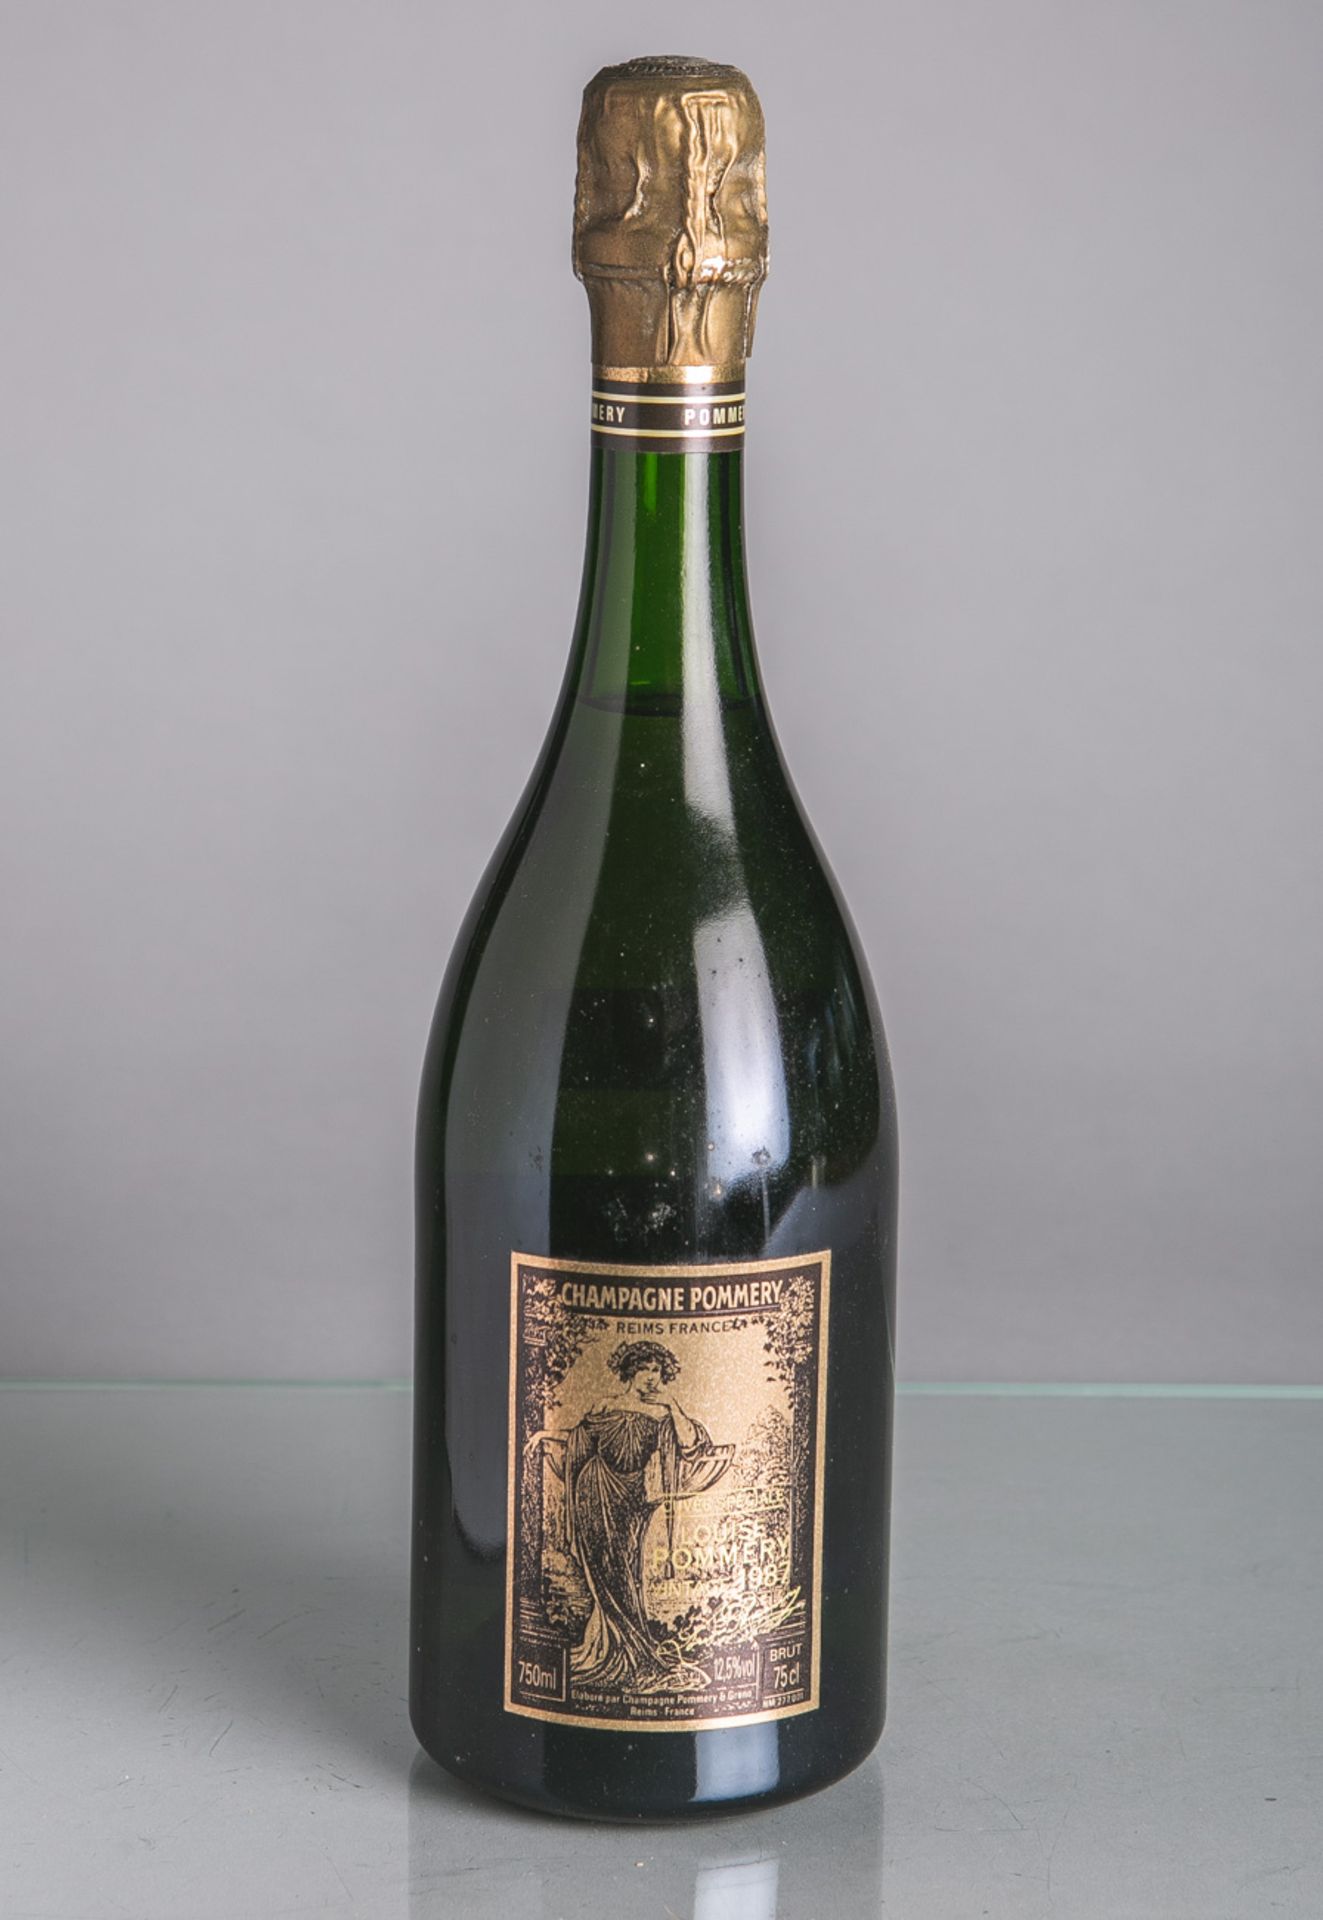 4 versch. Champagner-Flaschen, je 0,75 L, bestehend aus: 1x Pommery Louise (1988), 1x H.